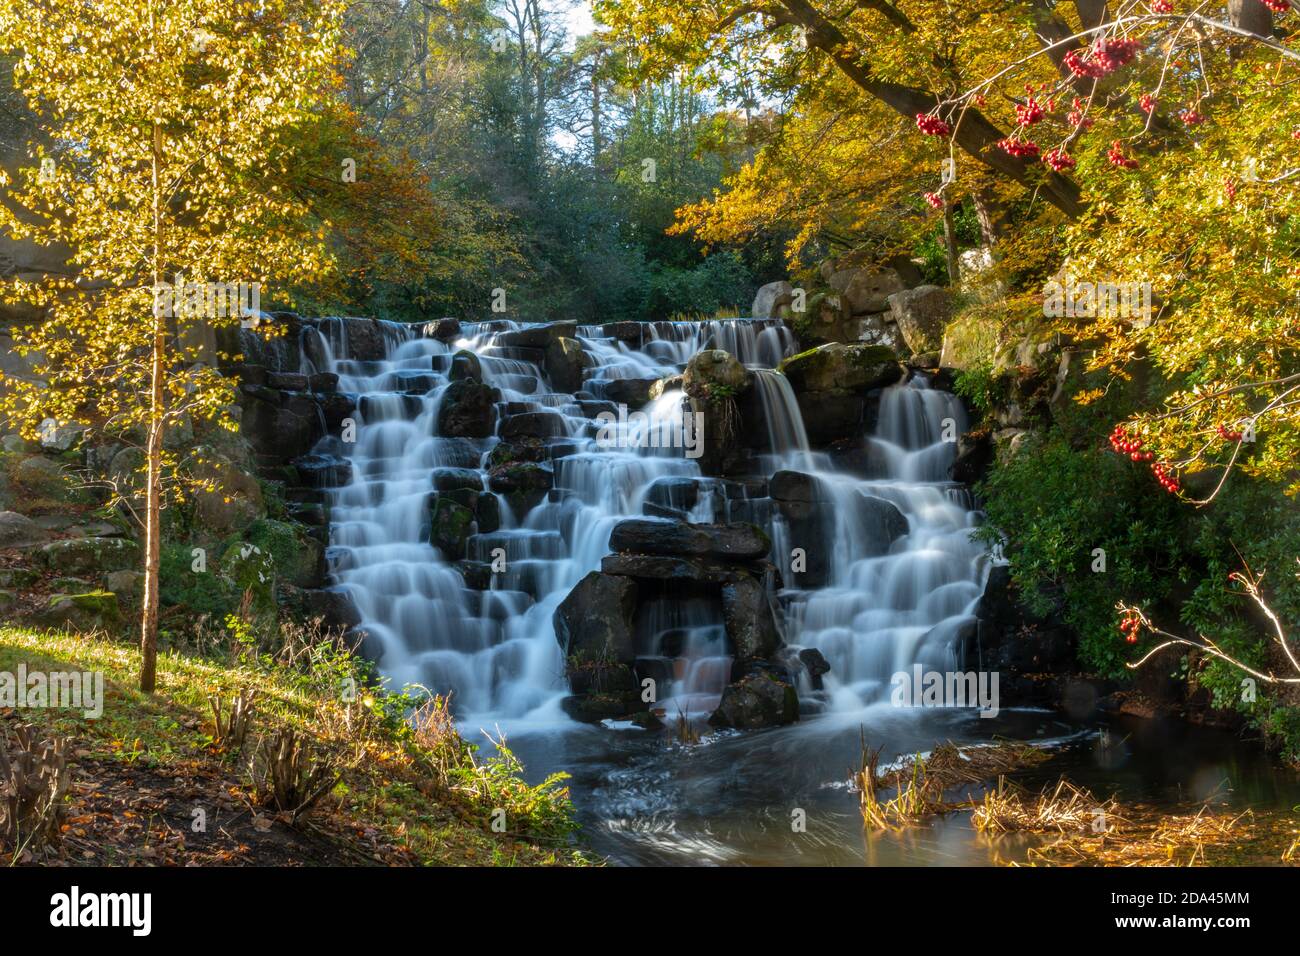 La cascade ornementale ou la chute d'eau au lac Virginia Water dans le grand parc de Windsor pendant l'automne, Angleterre, Royaume-Uni Banque D'Images